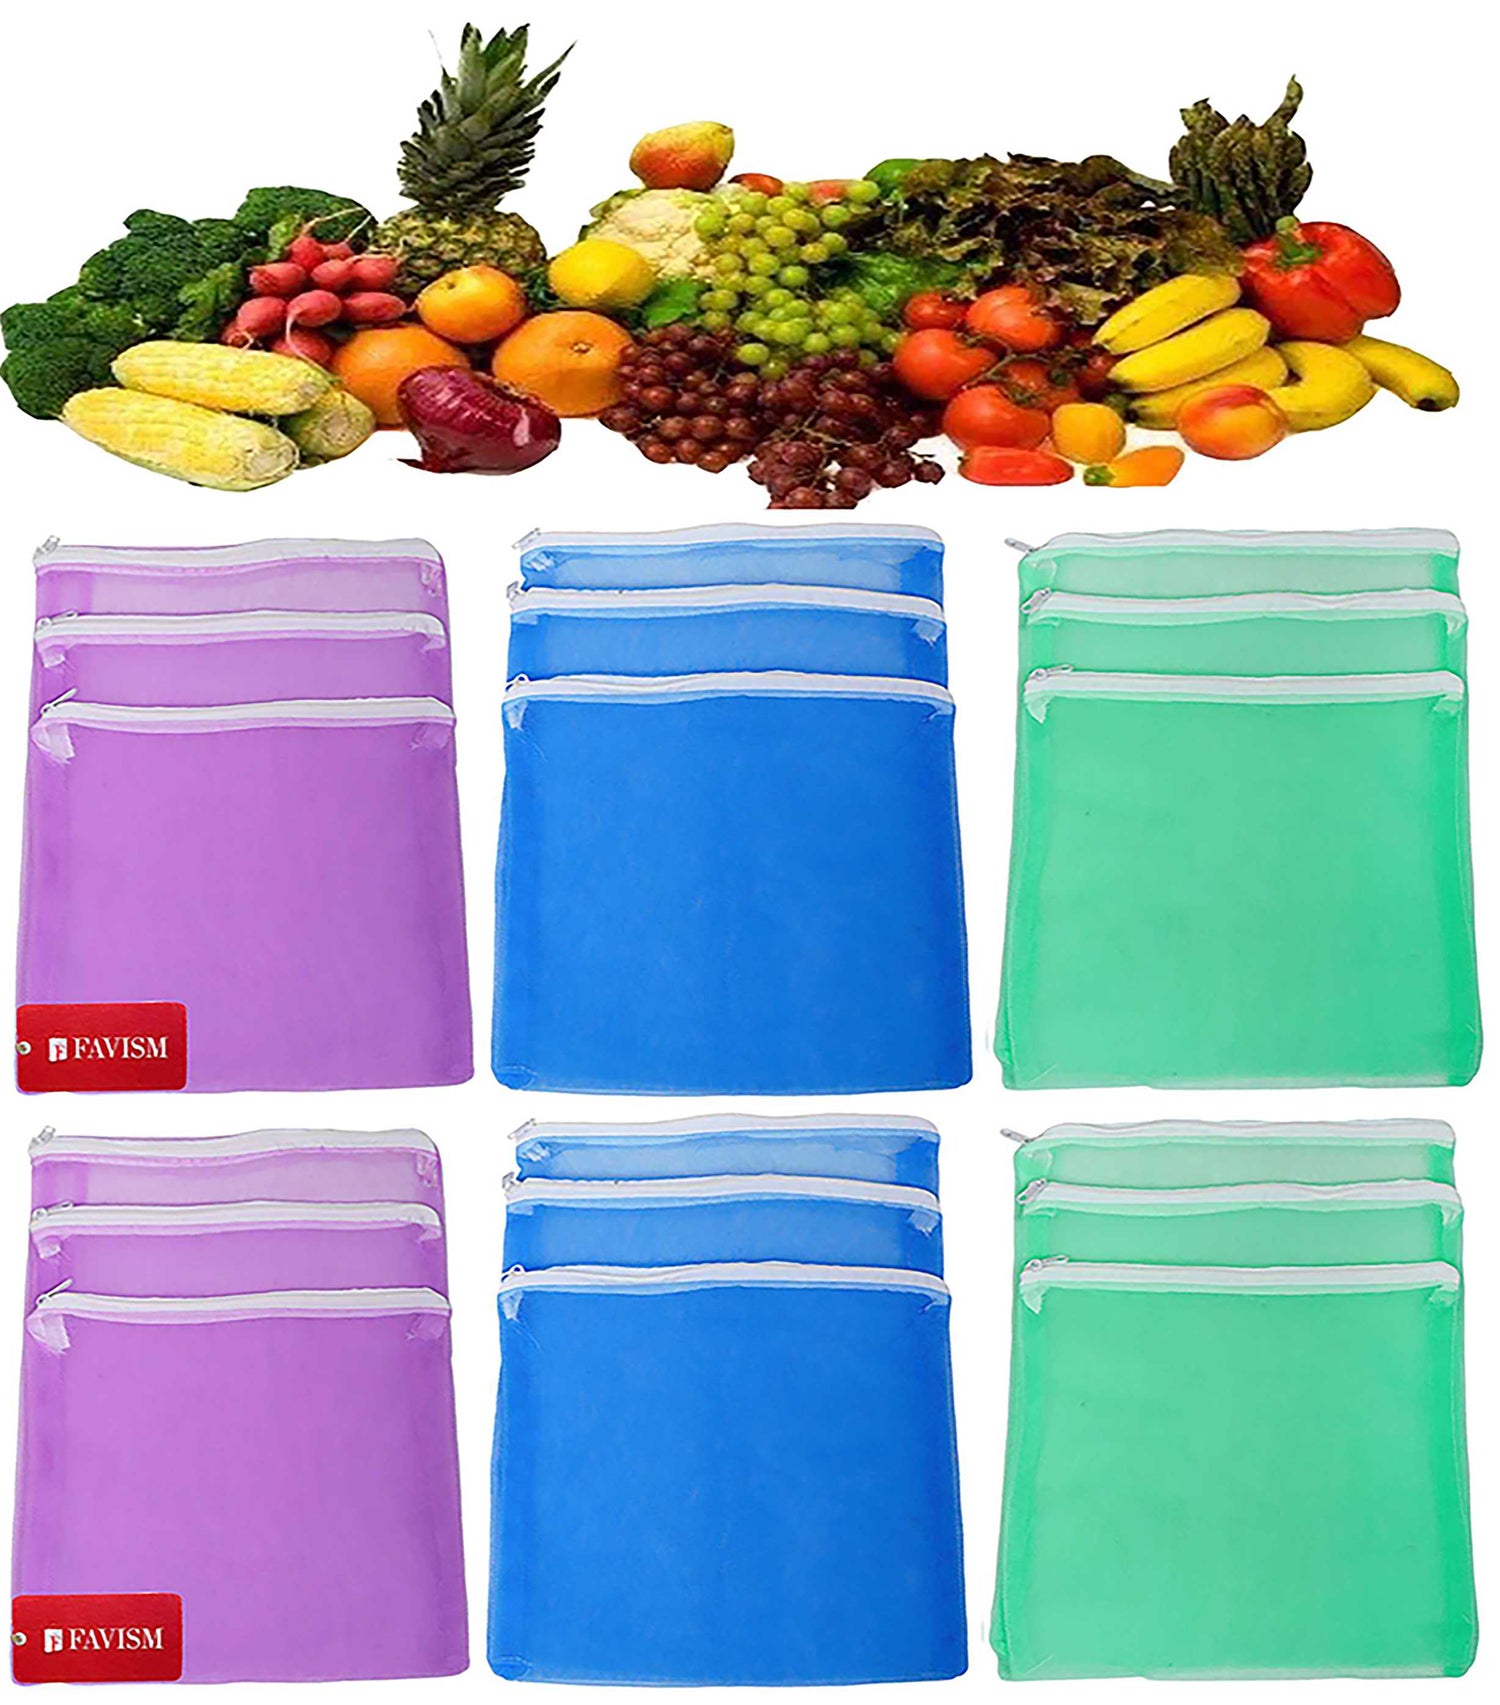 Vegetable & Grocery Bags